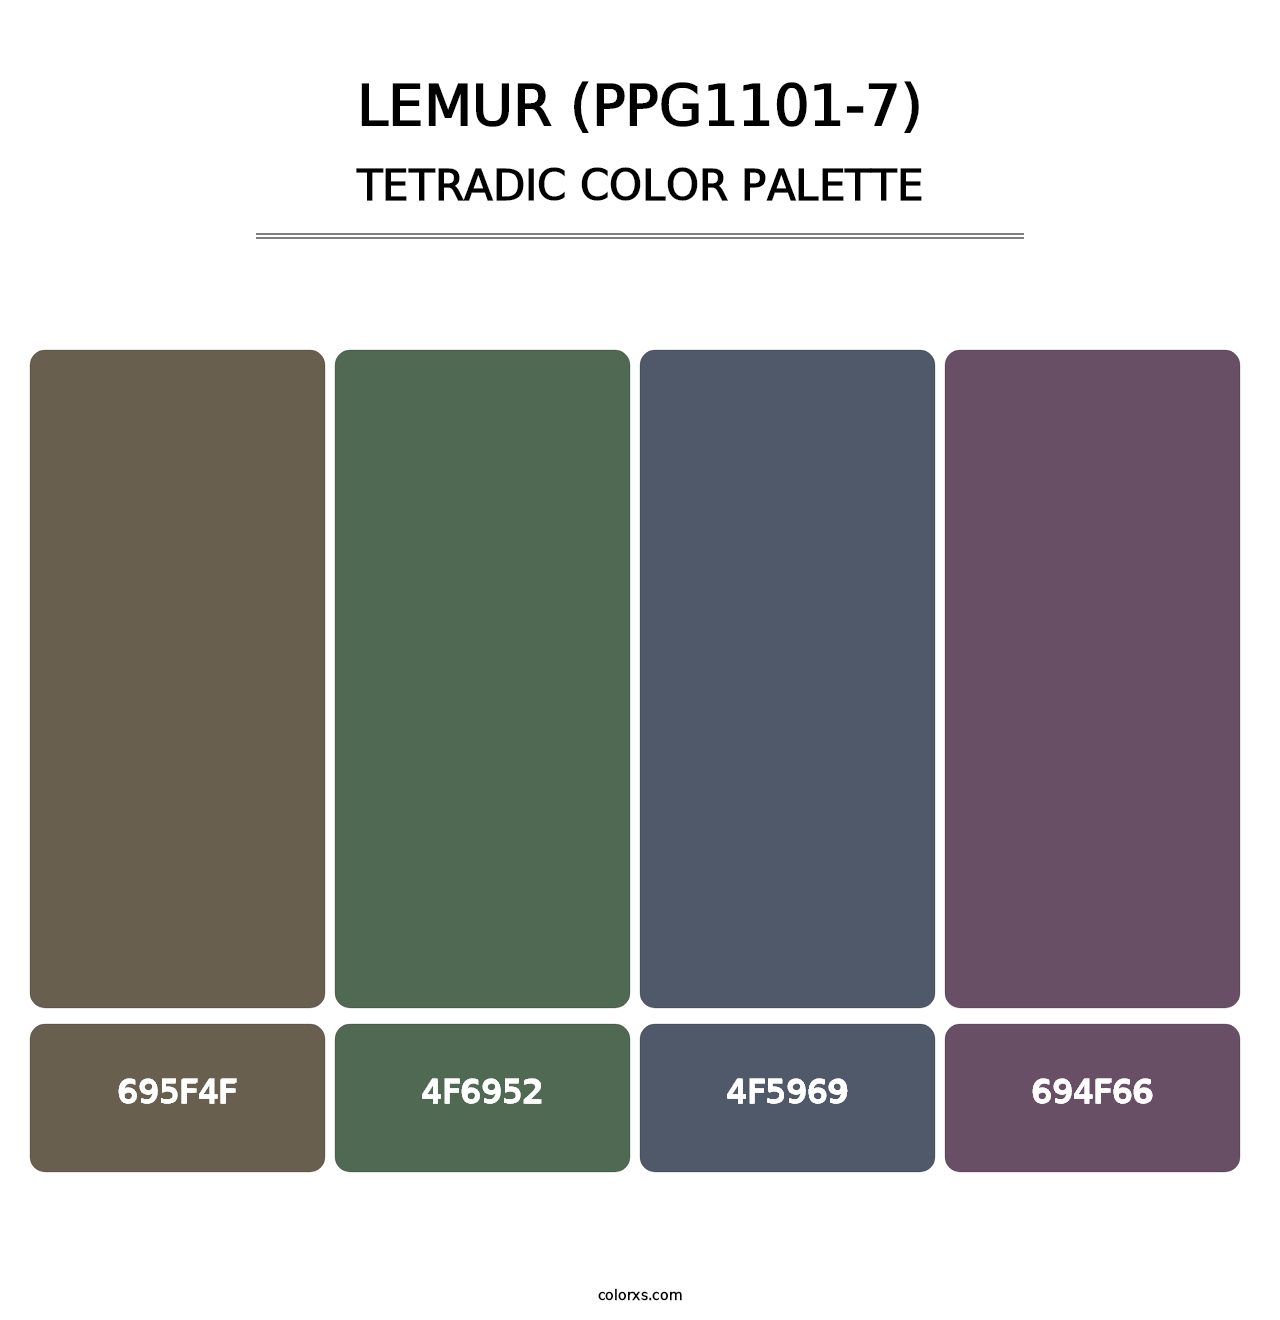 Lemur (PPG1101-7) - Tetradic Color Palette